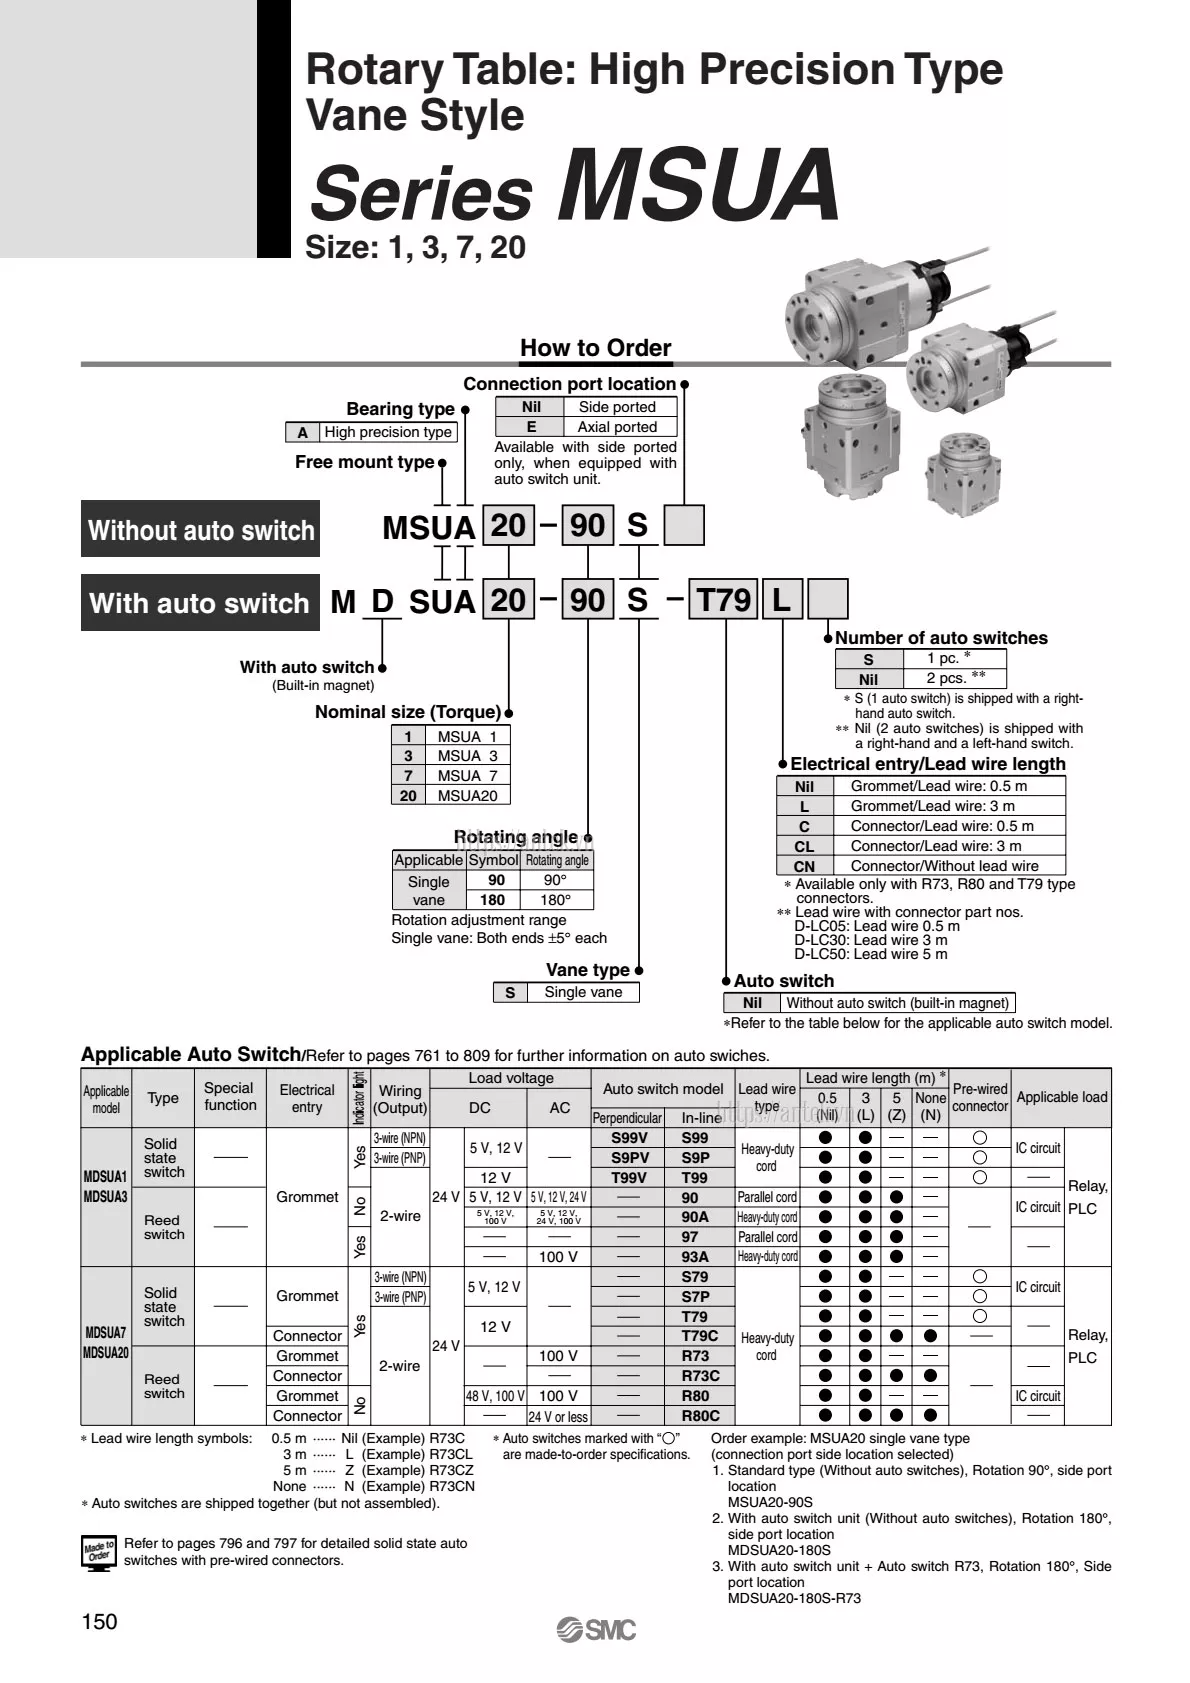 Thông số đặt hàng Xi lanh CDRBU2W15-180S